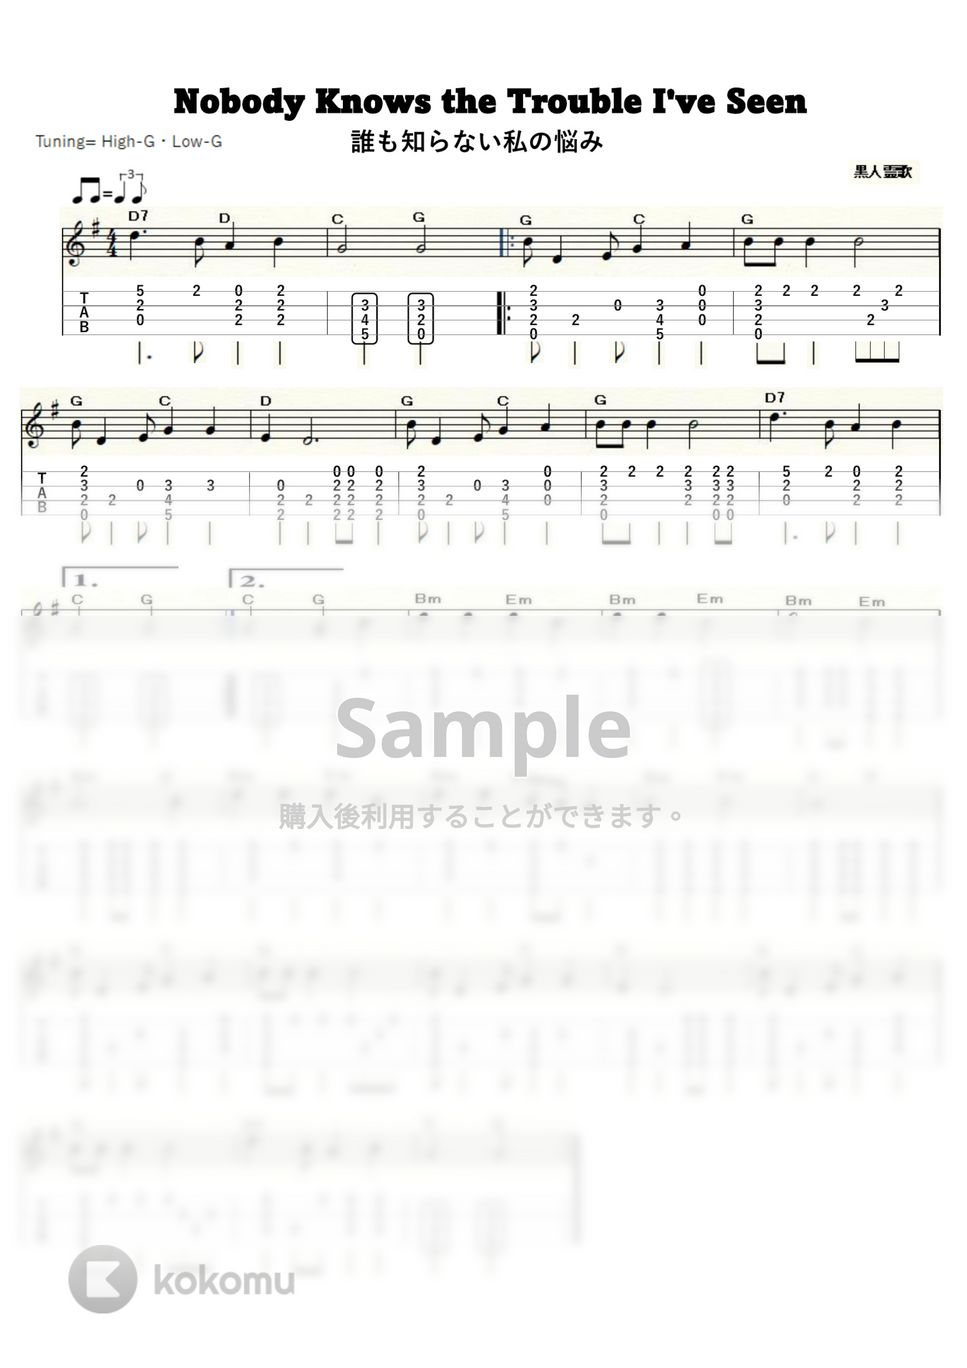 黒人霊歌 - 誰も知らない私の悩み (ｳｸﾚﾚｿﾛ / High-G,Low-G / 初～中級) by ukulelepapa